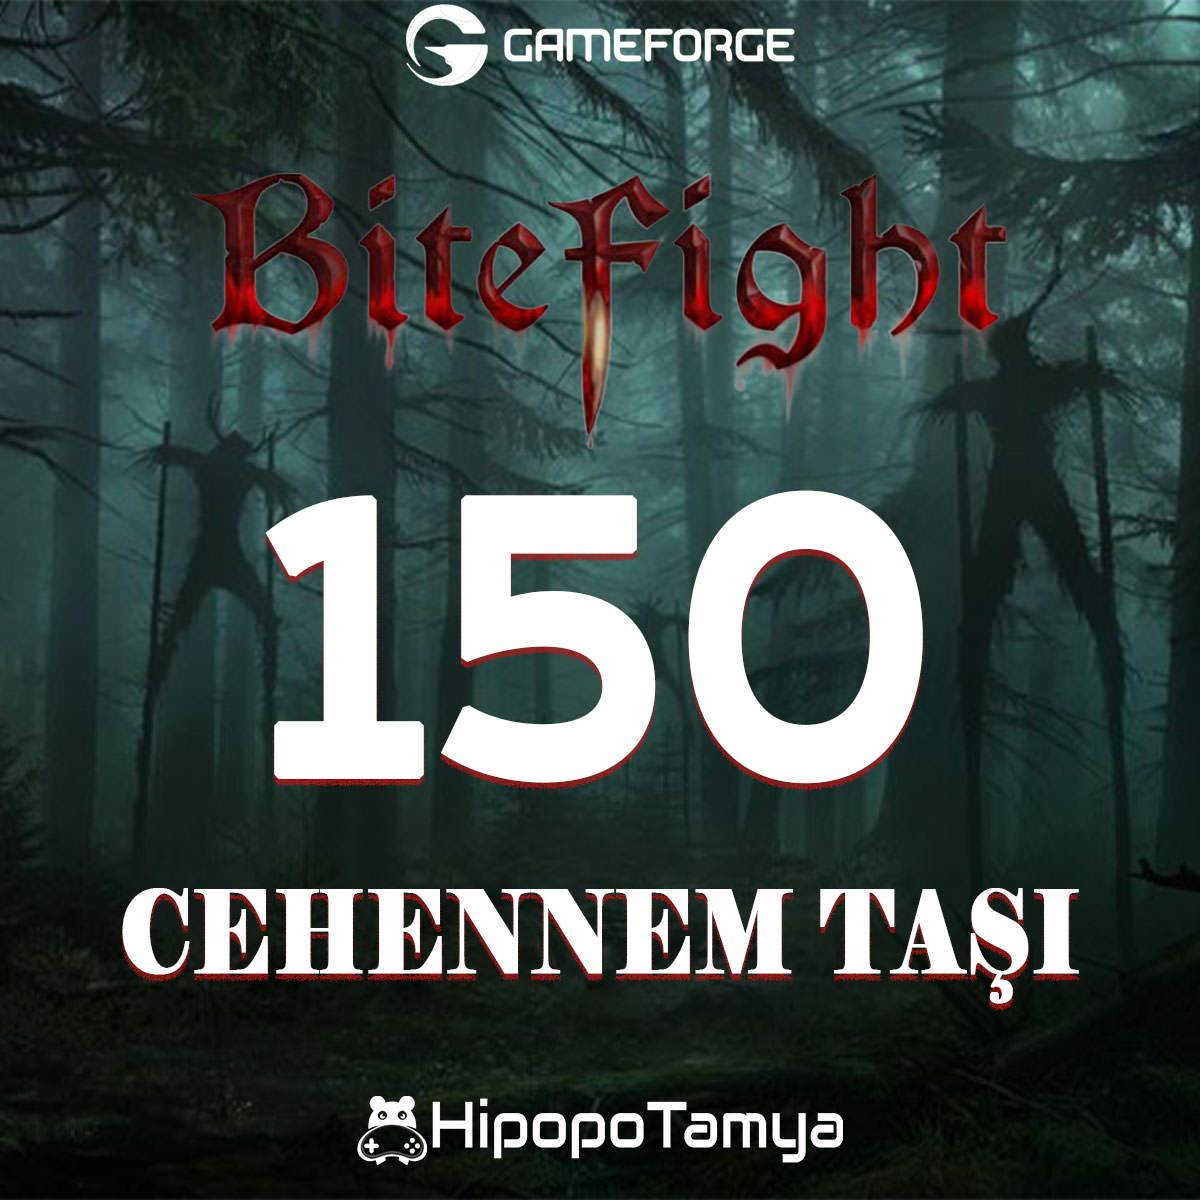 Bitefight 150 Cehennem Taşı